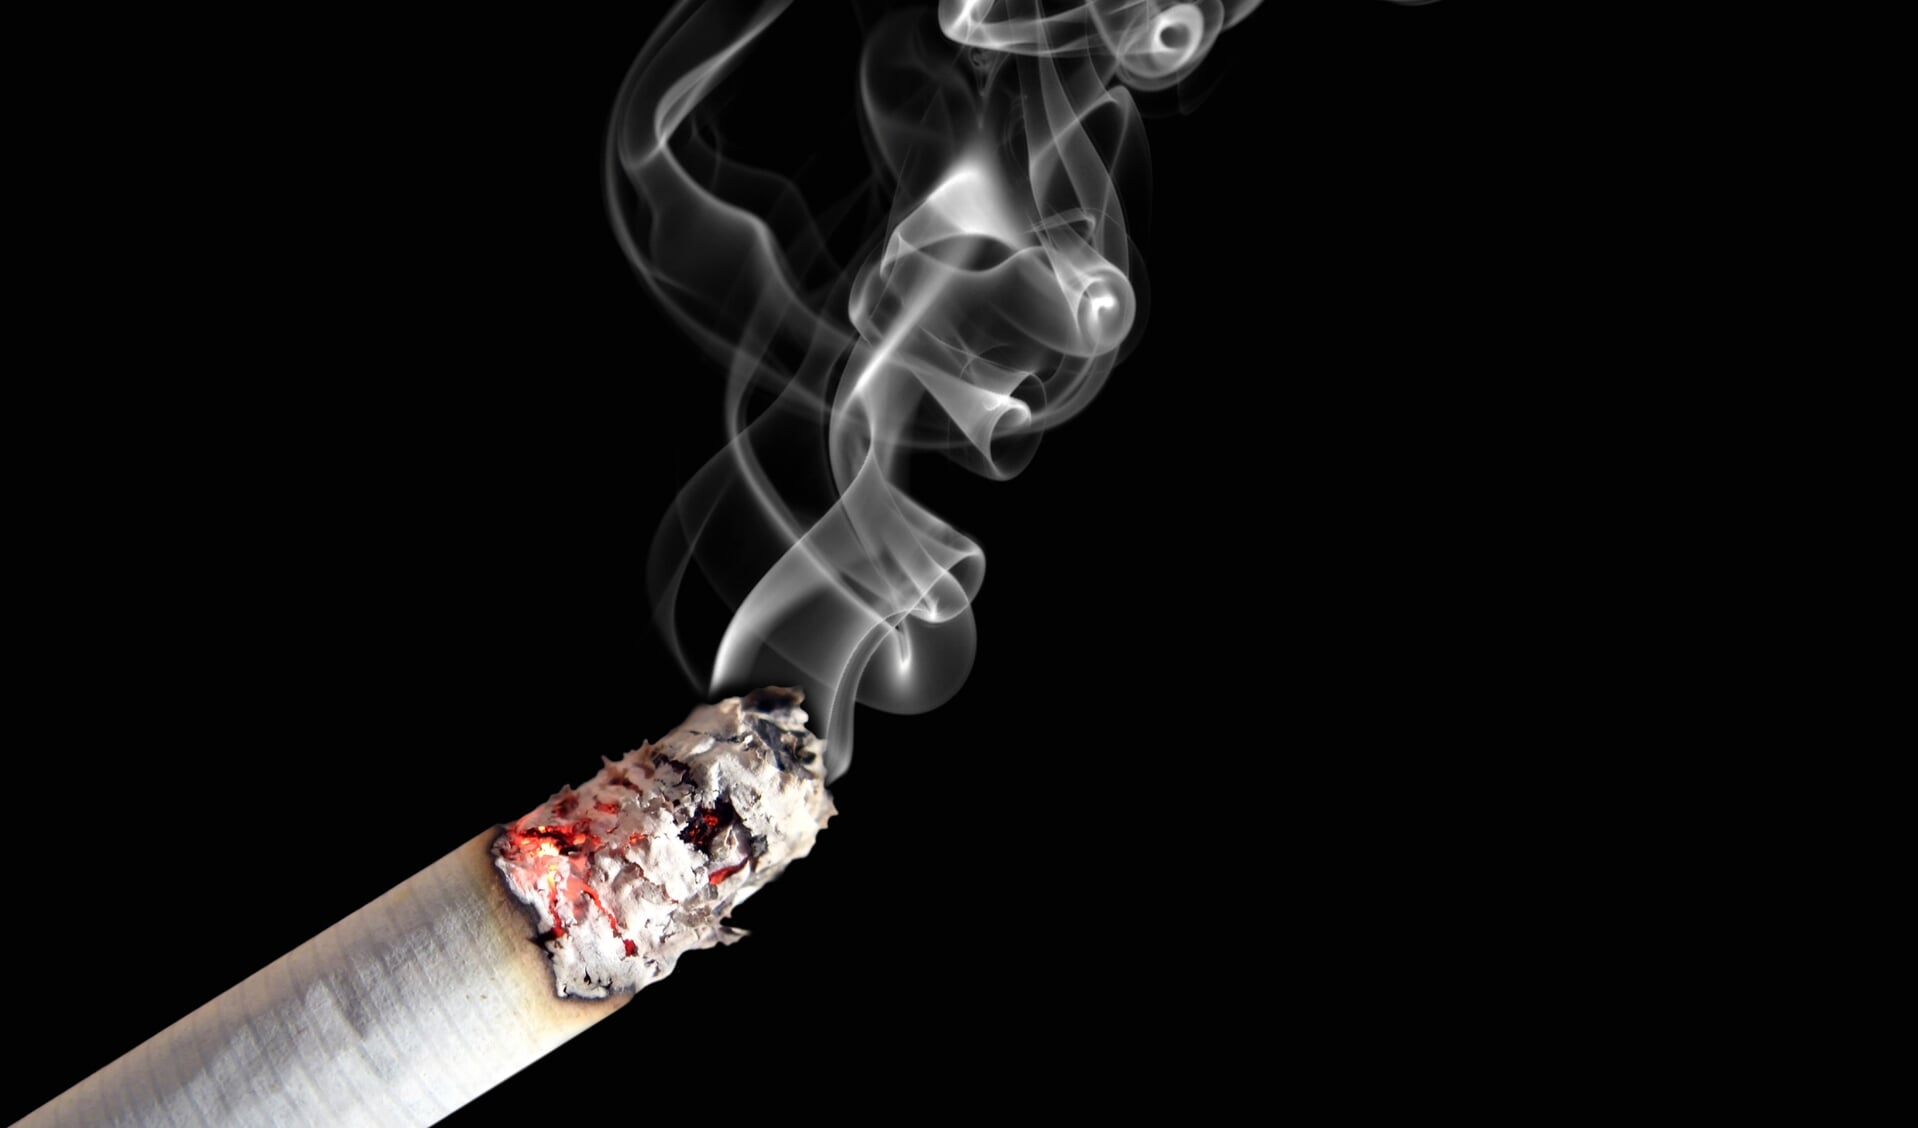 In de gemeente Nieuwegein zegt 14,2 procent van de volwassen inwoners weleens te roken. 